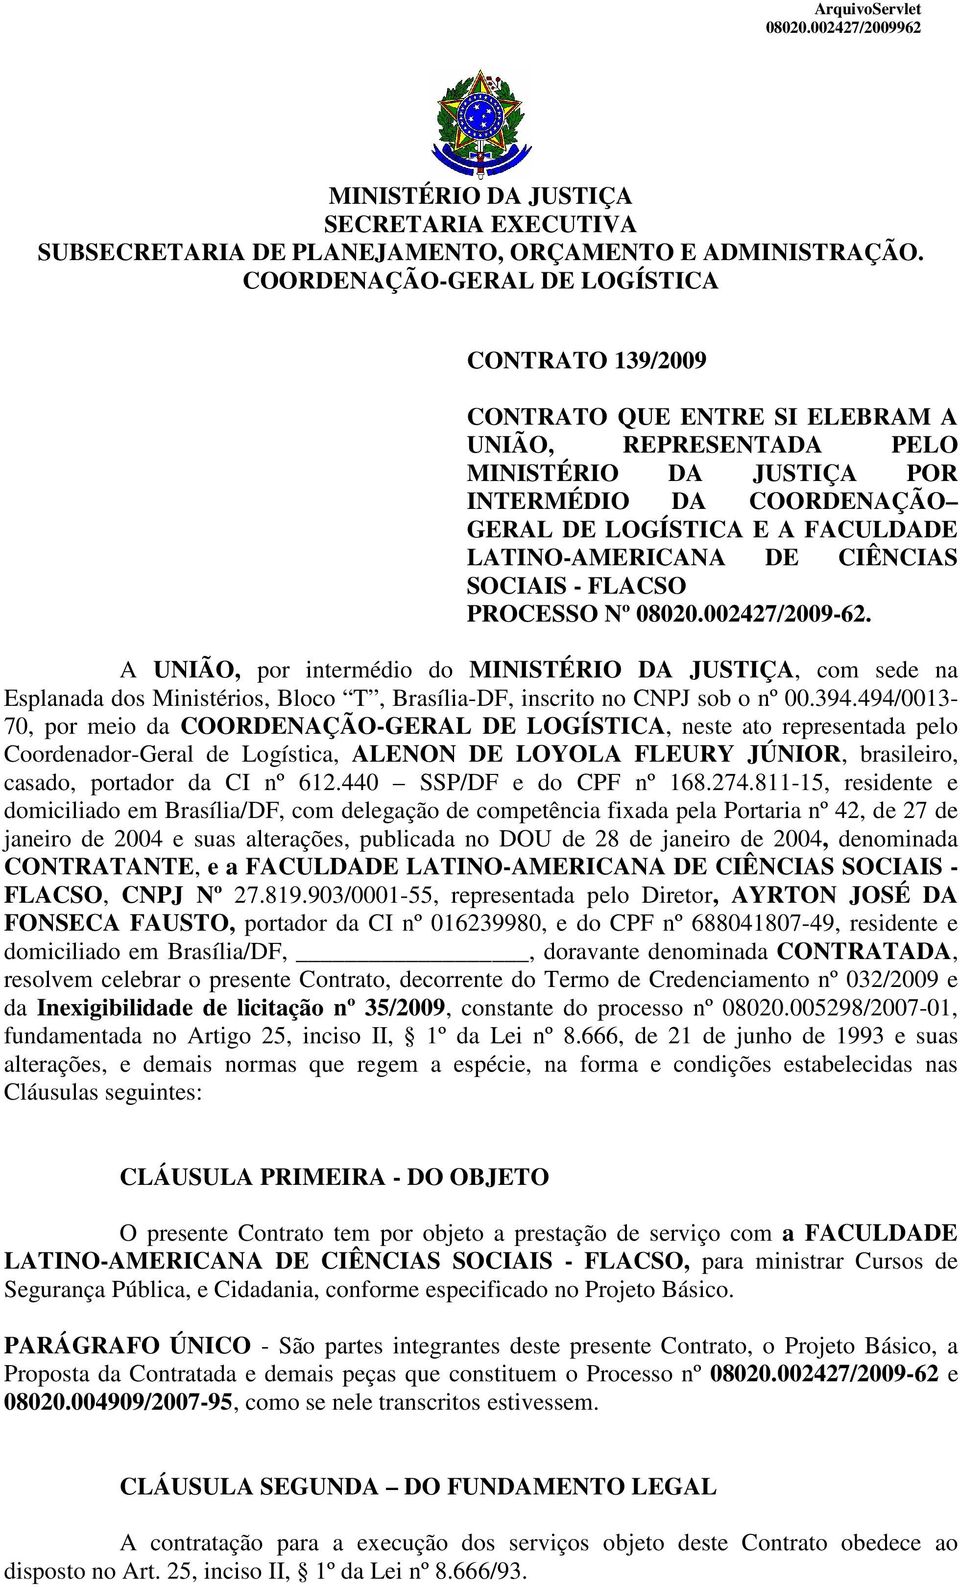 LATINO-AMERICANA DE CIÊNCIAS SOCIAIS - FLACSO PROCESSO Nº 08020.002427/2009-62.